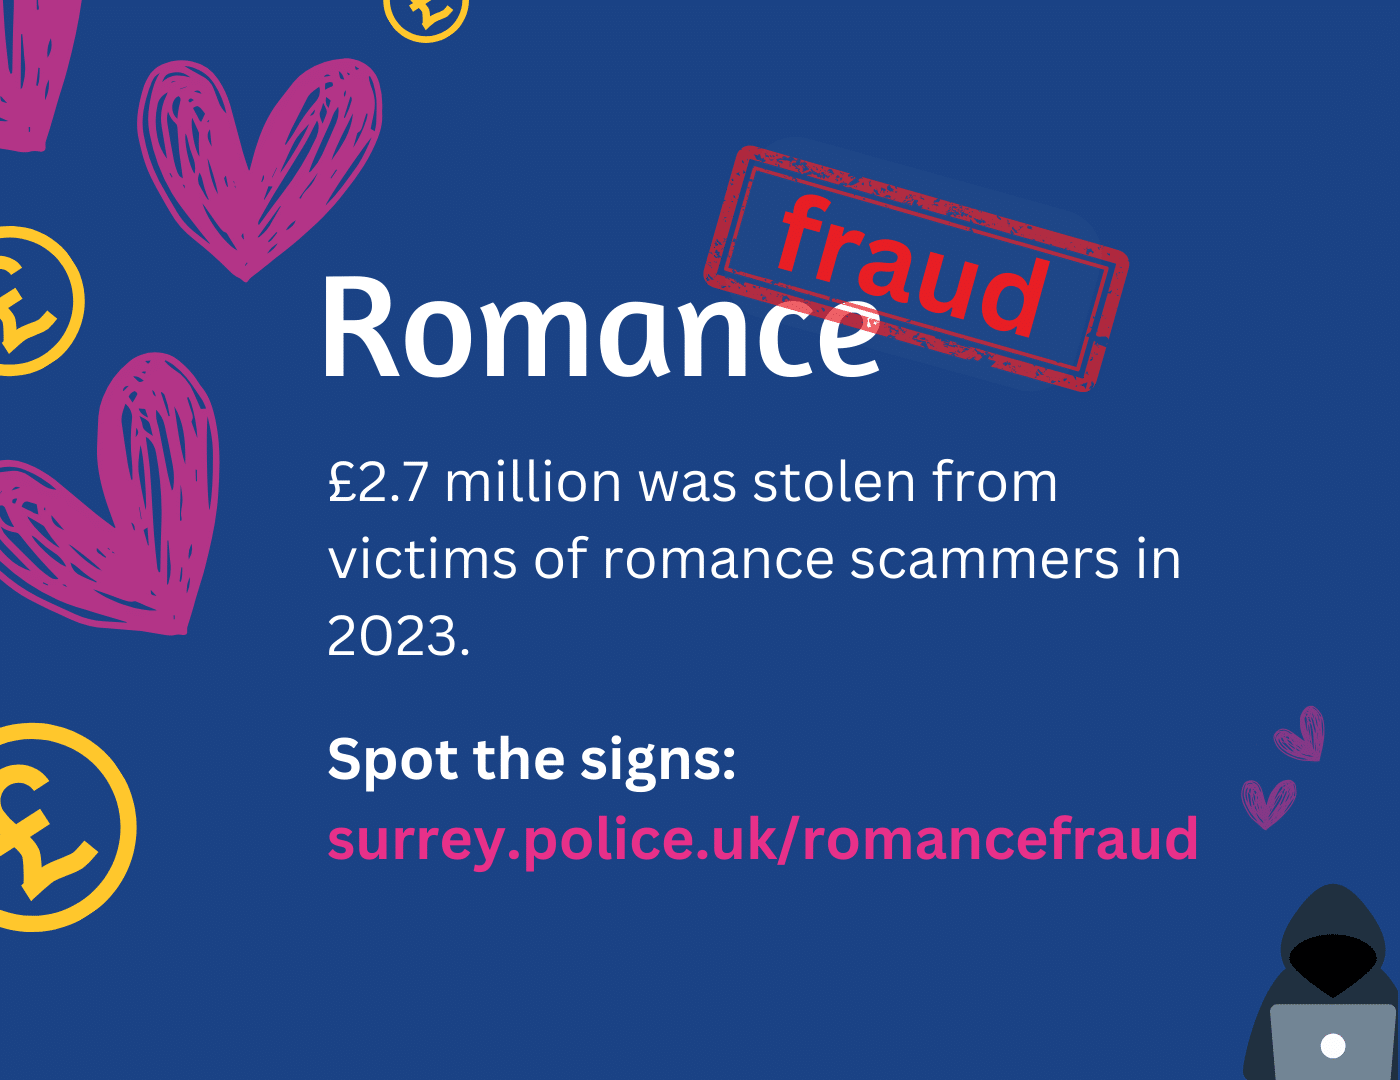 L'immagine di base della frode romantica dice che 2.7 milioni di sterline sono stati rubati alle vittime di truffatori romantici nel 2023. Individua i segni.